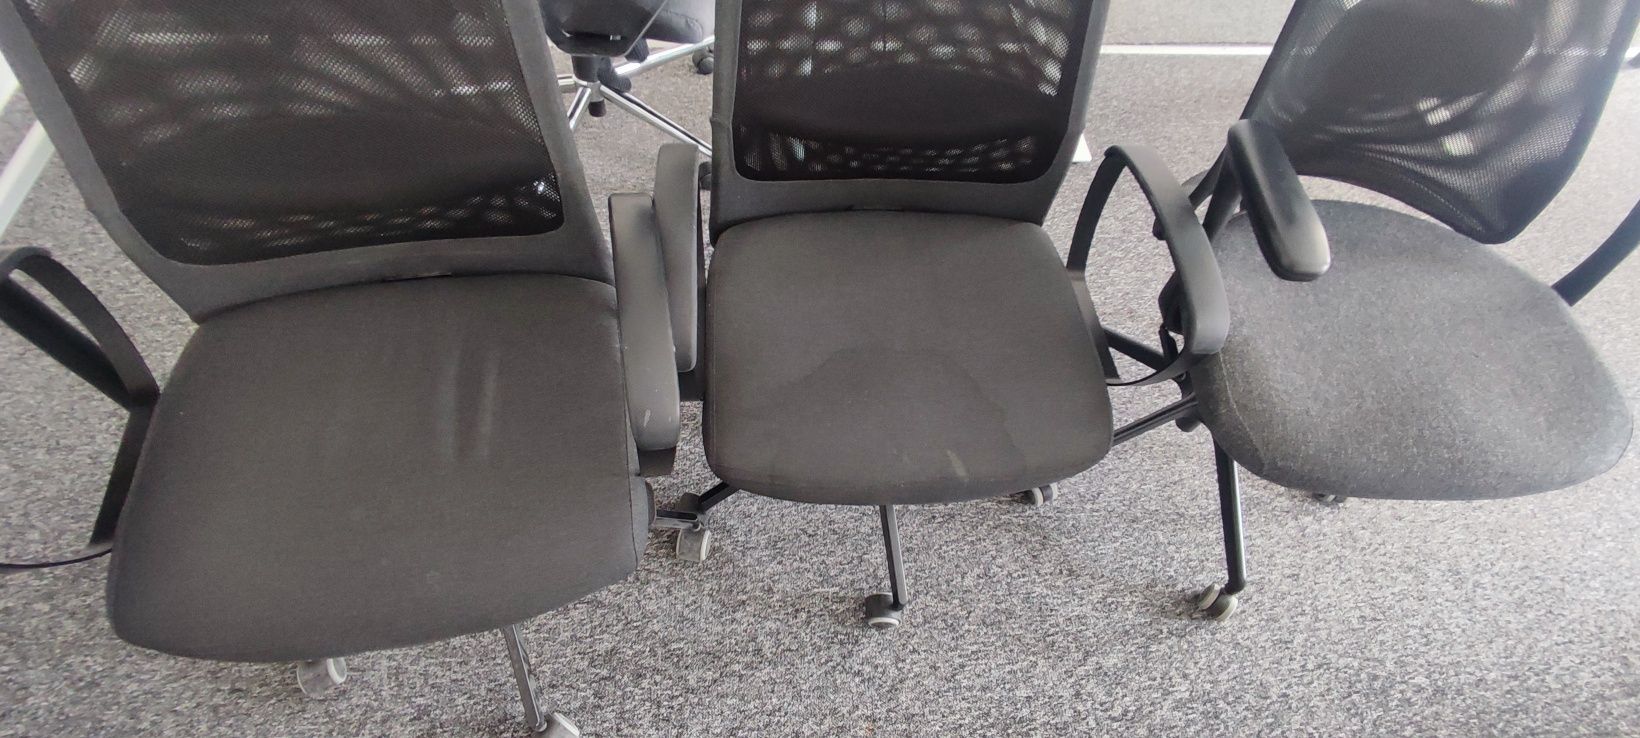 Krzesła / fotele biurowe